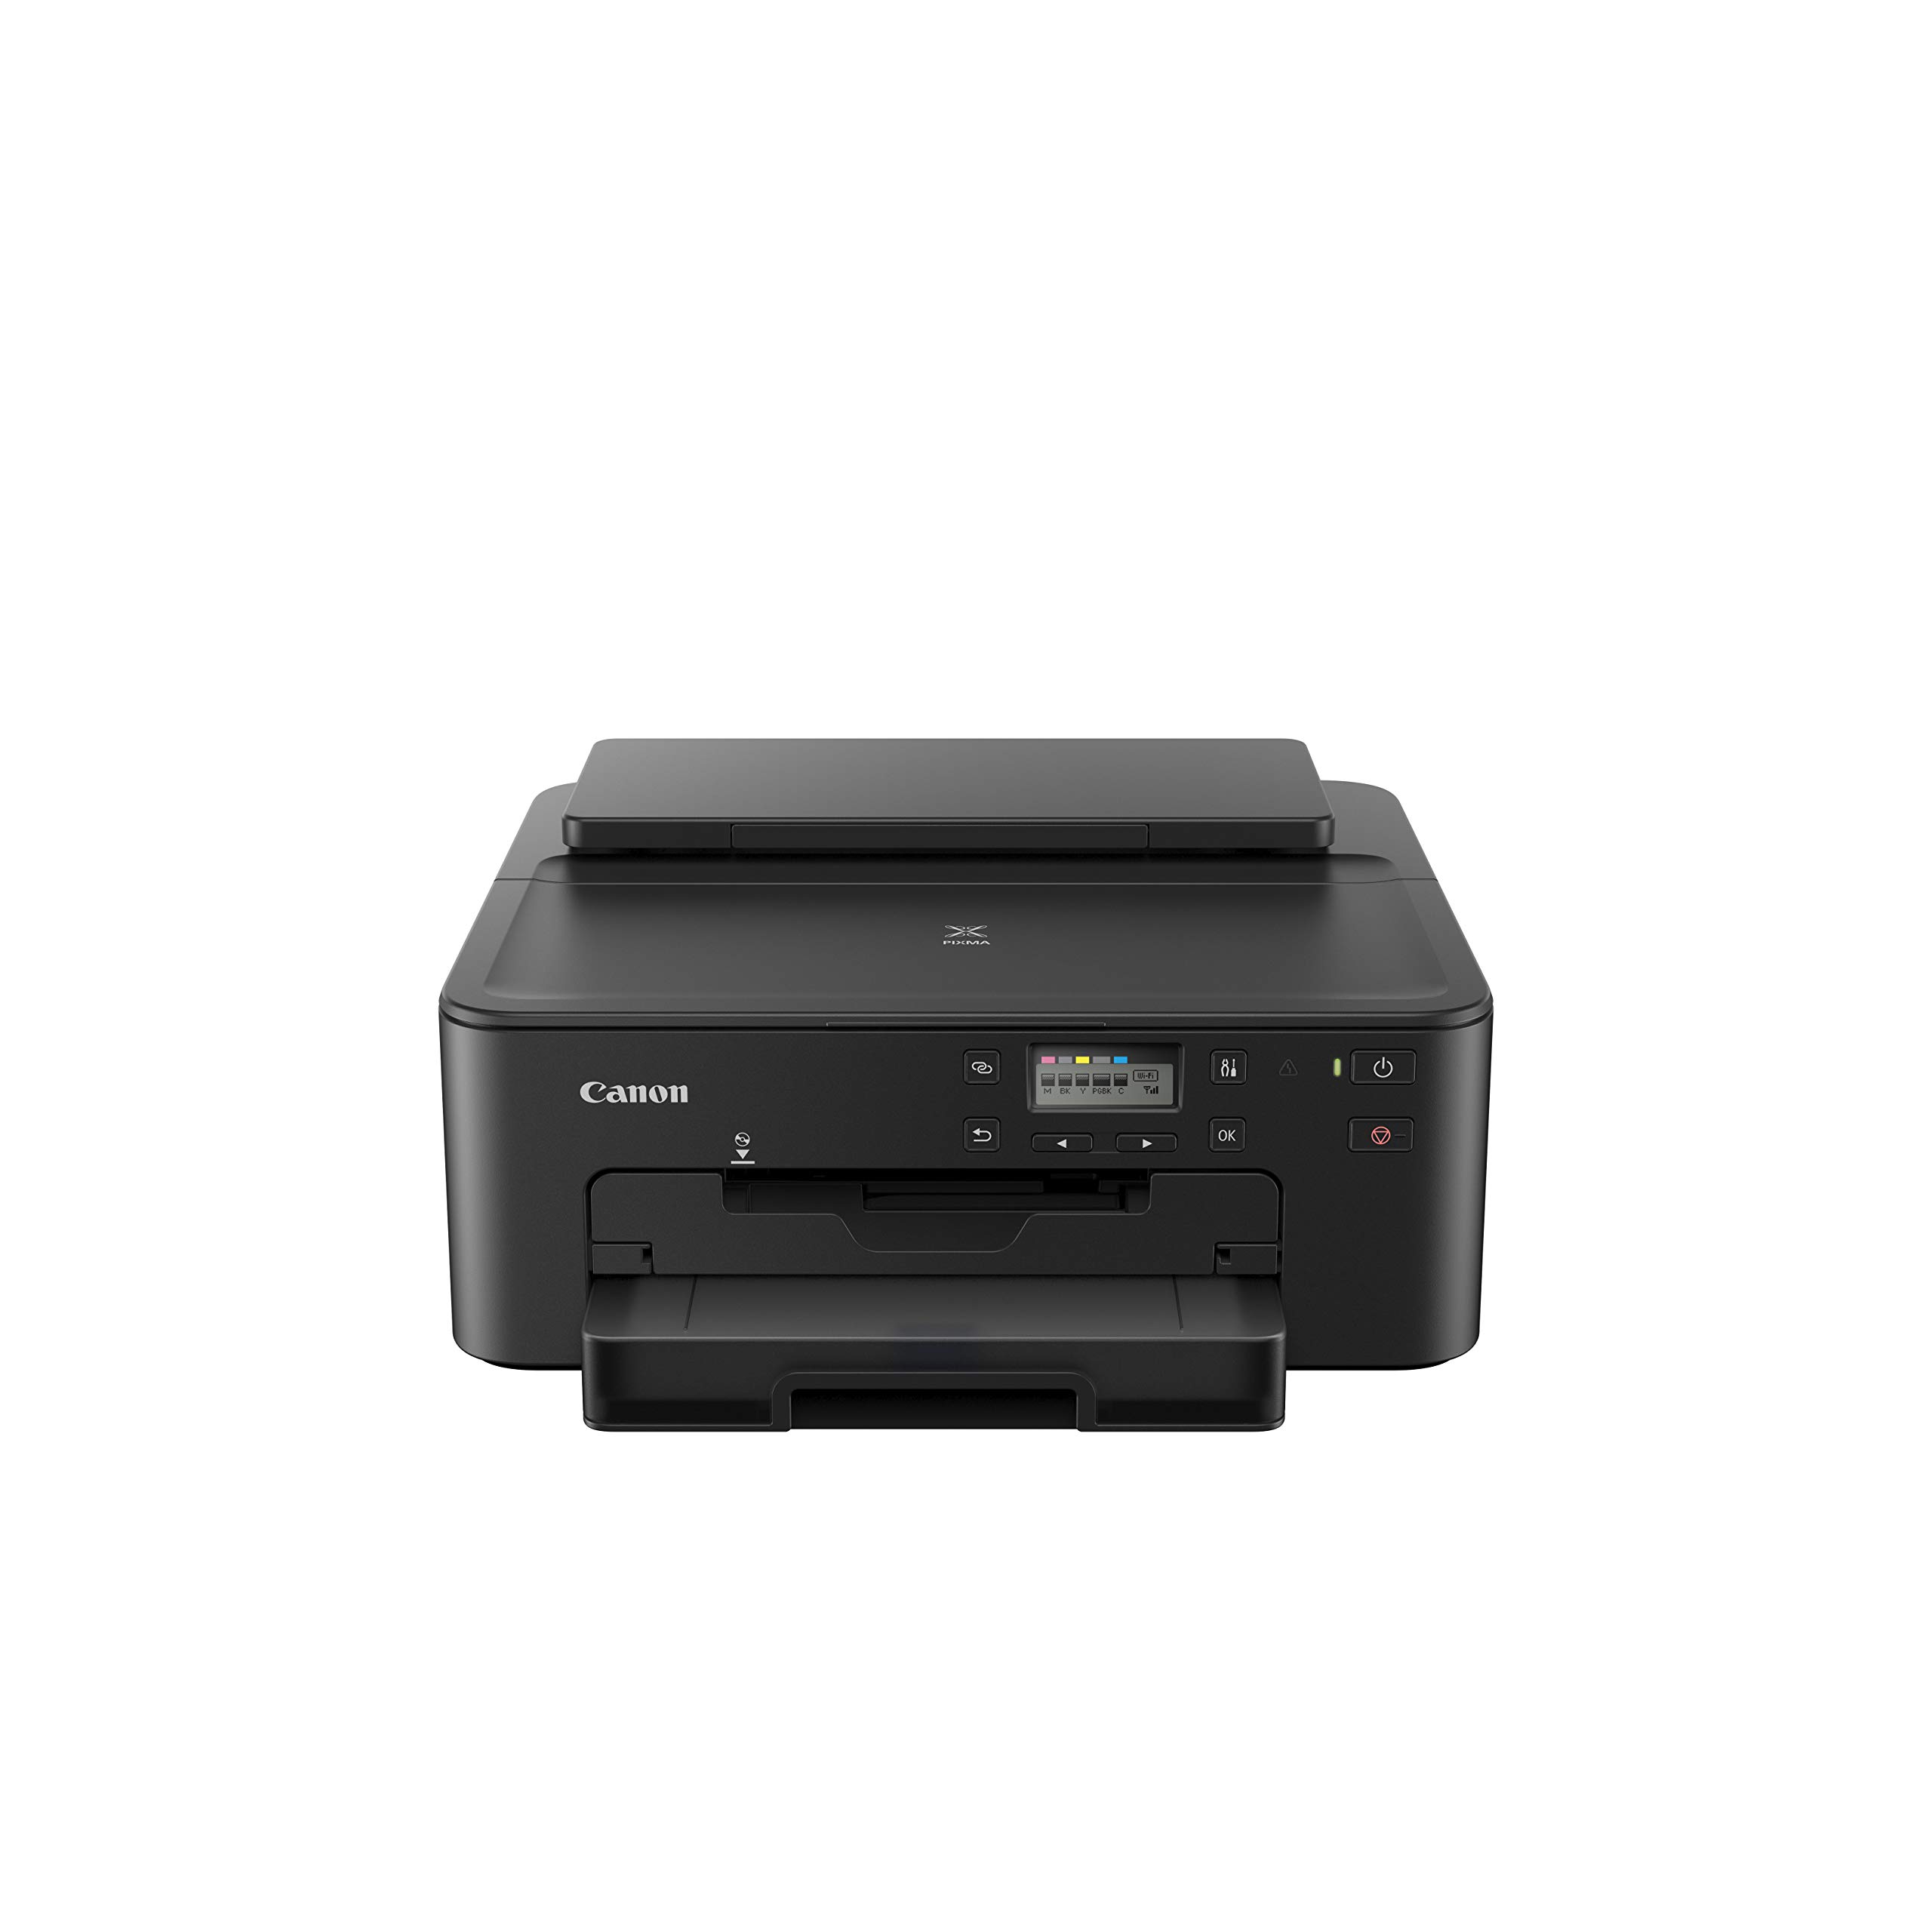 Canon PIXMA TS705 Drucker Tintenstrahl DIN A4 (WLAN, LAN, 5 separate Tinten, automatischer Duplexdruck, 2 Papierzuführungen, Papierkassette 250 Blatt, Apple AirPrint), schwarz